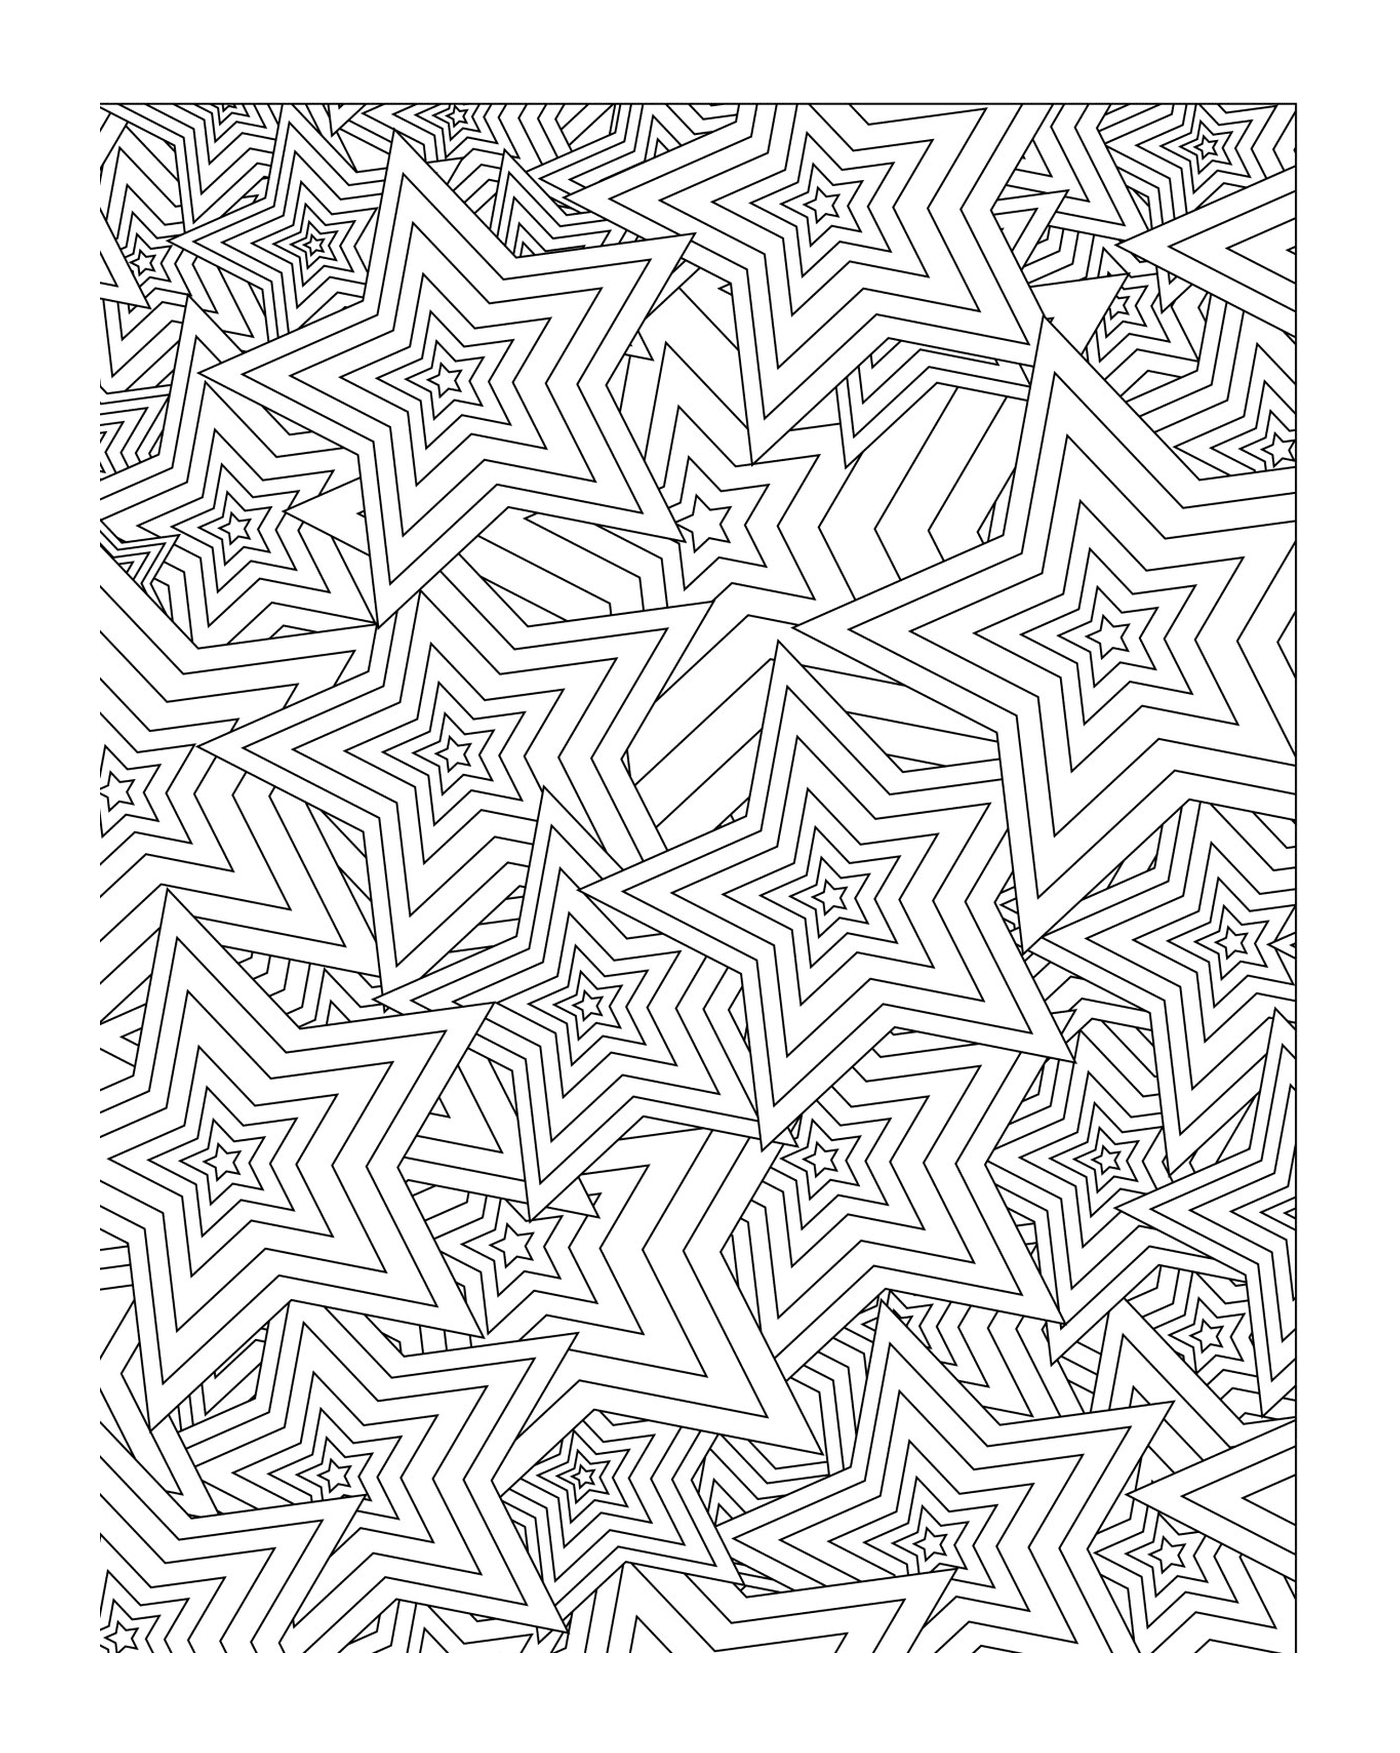  Un patrón de estrellas en forma de mandala 